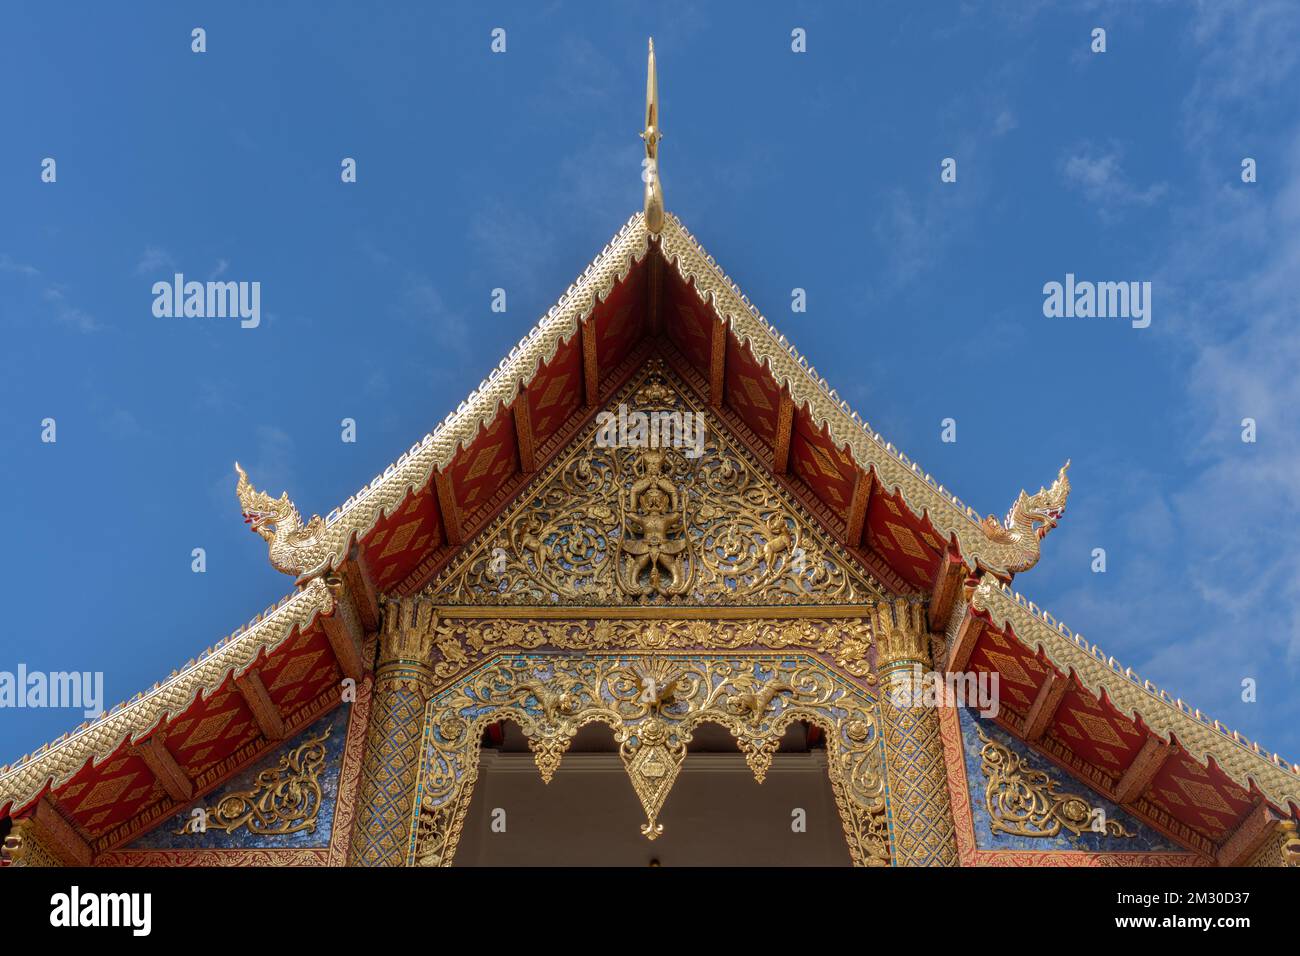 Vue sur Viharn Luang ou le principal pignon de vihara avec des sculptures en bois doré dans l'ancien temple bouddhiste Wat Phra Singh de Lanna, Chiang Mai, Thaïlande Banque D'Images